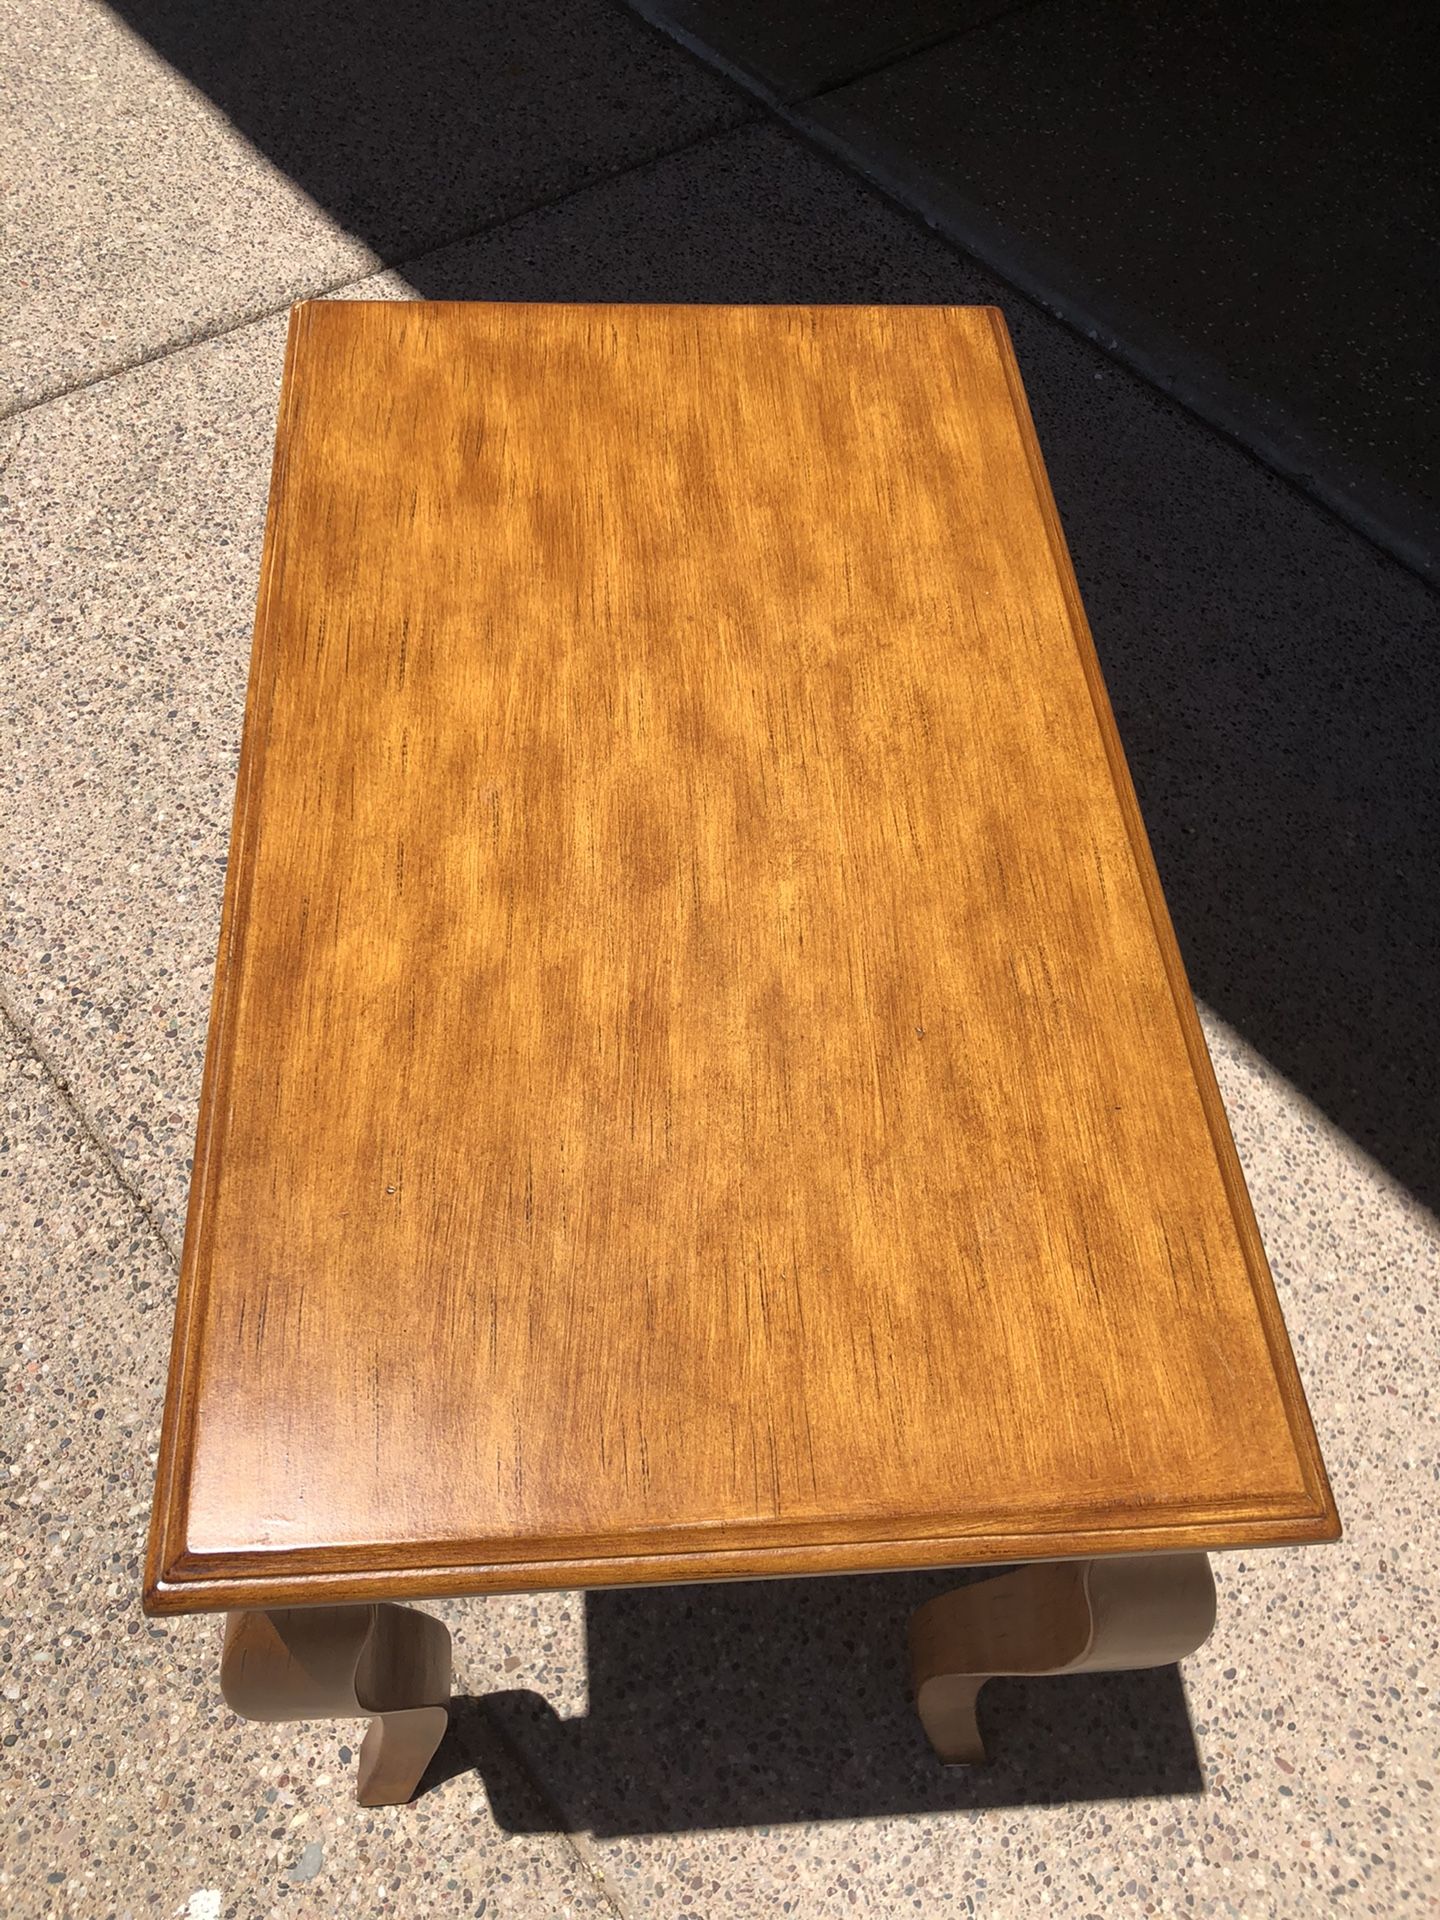 Light oak side table